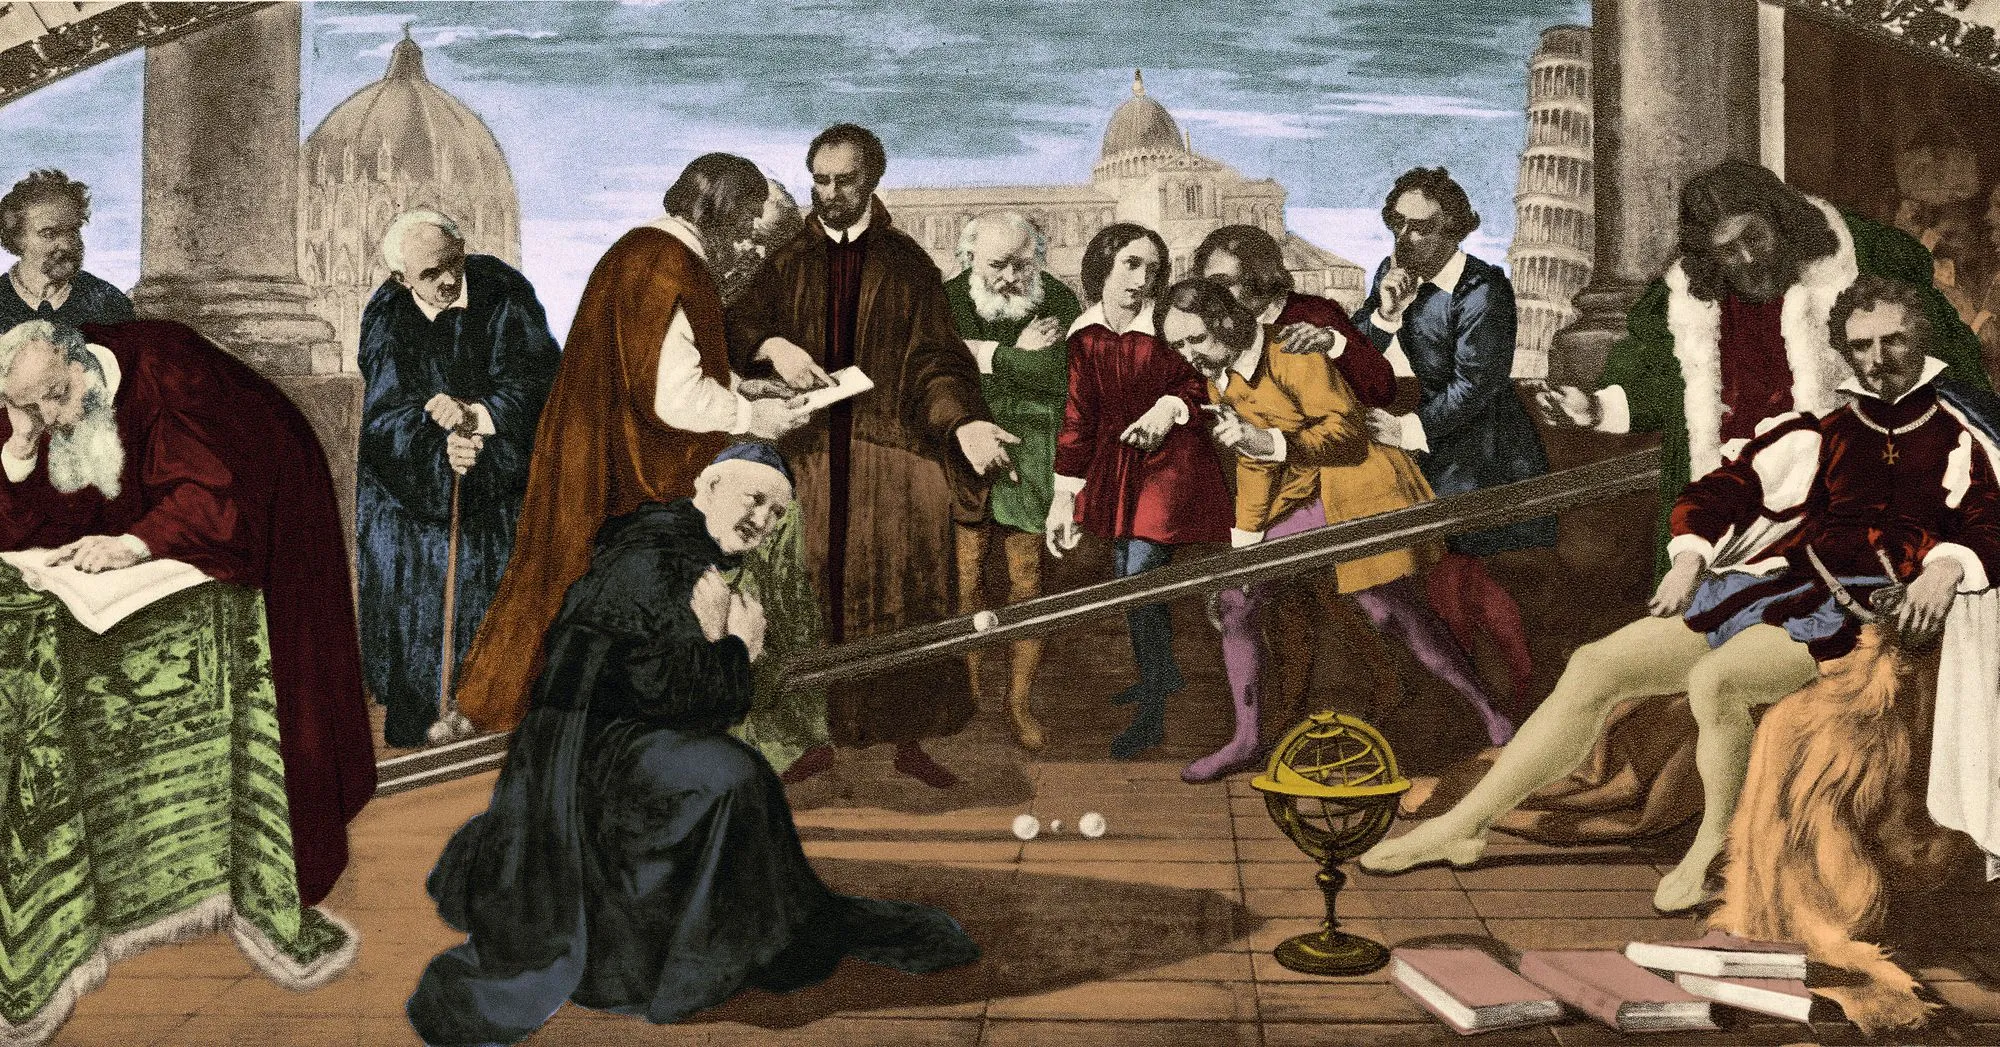 Représentation de l'expérience de Galilée sur la chute des poids de masses différentes